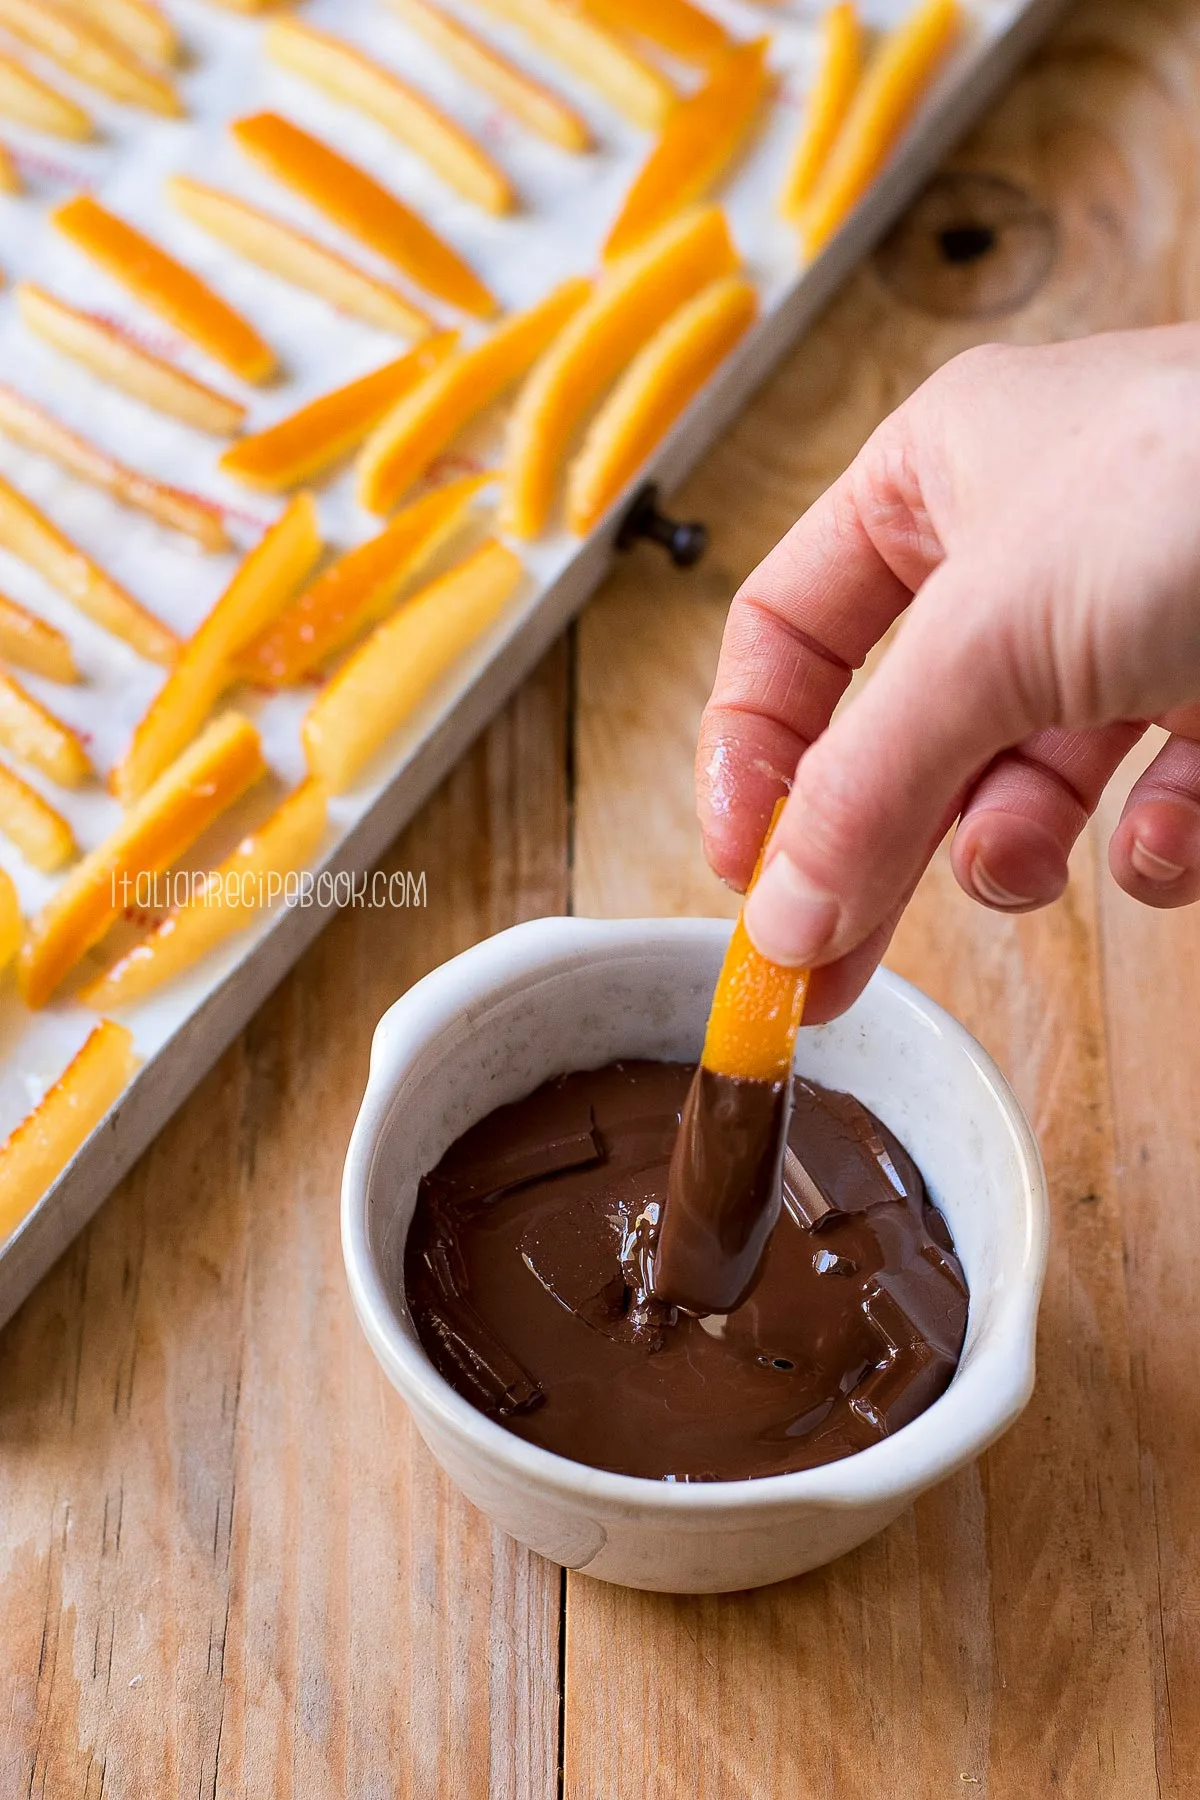 hand dipping orange peels in dark chocolate